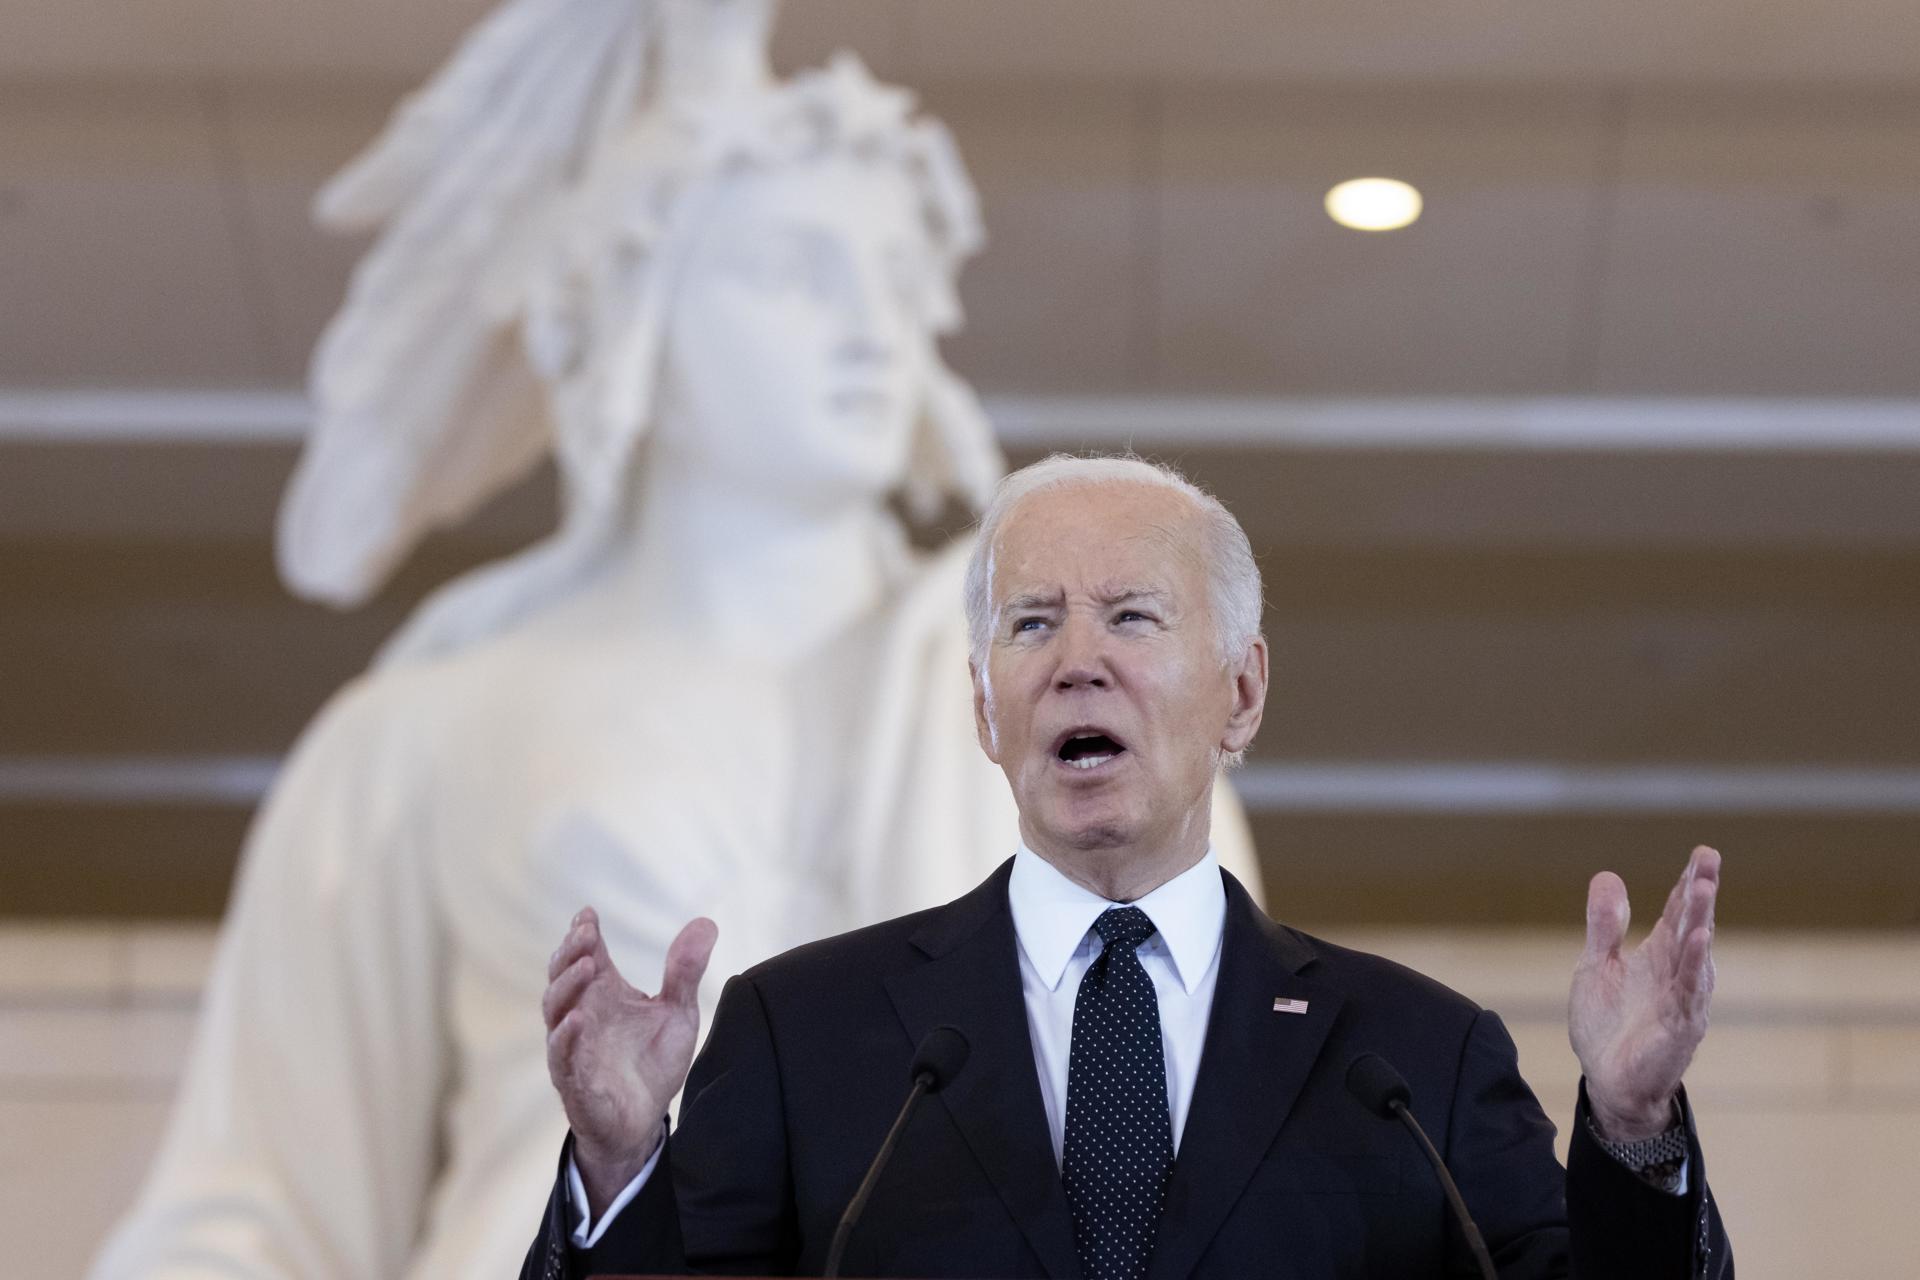 Joe Biden ratificó que el poyo de Estados Unidos a Israel “es inquebrantable” a pesar de desacuerdos – El Diario NY